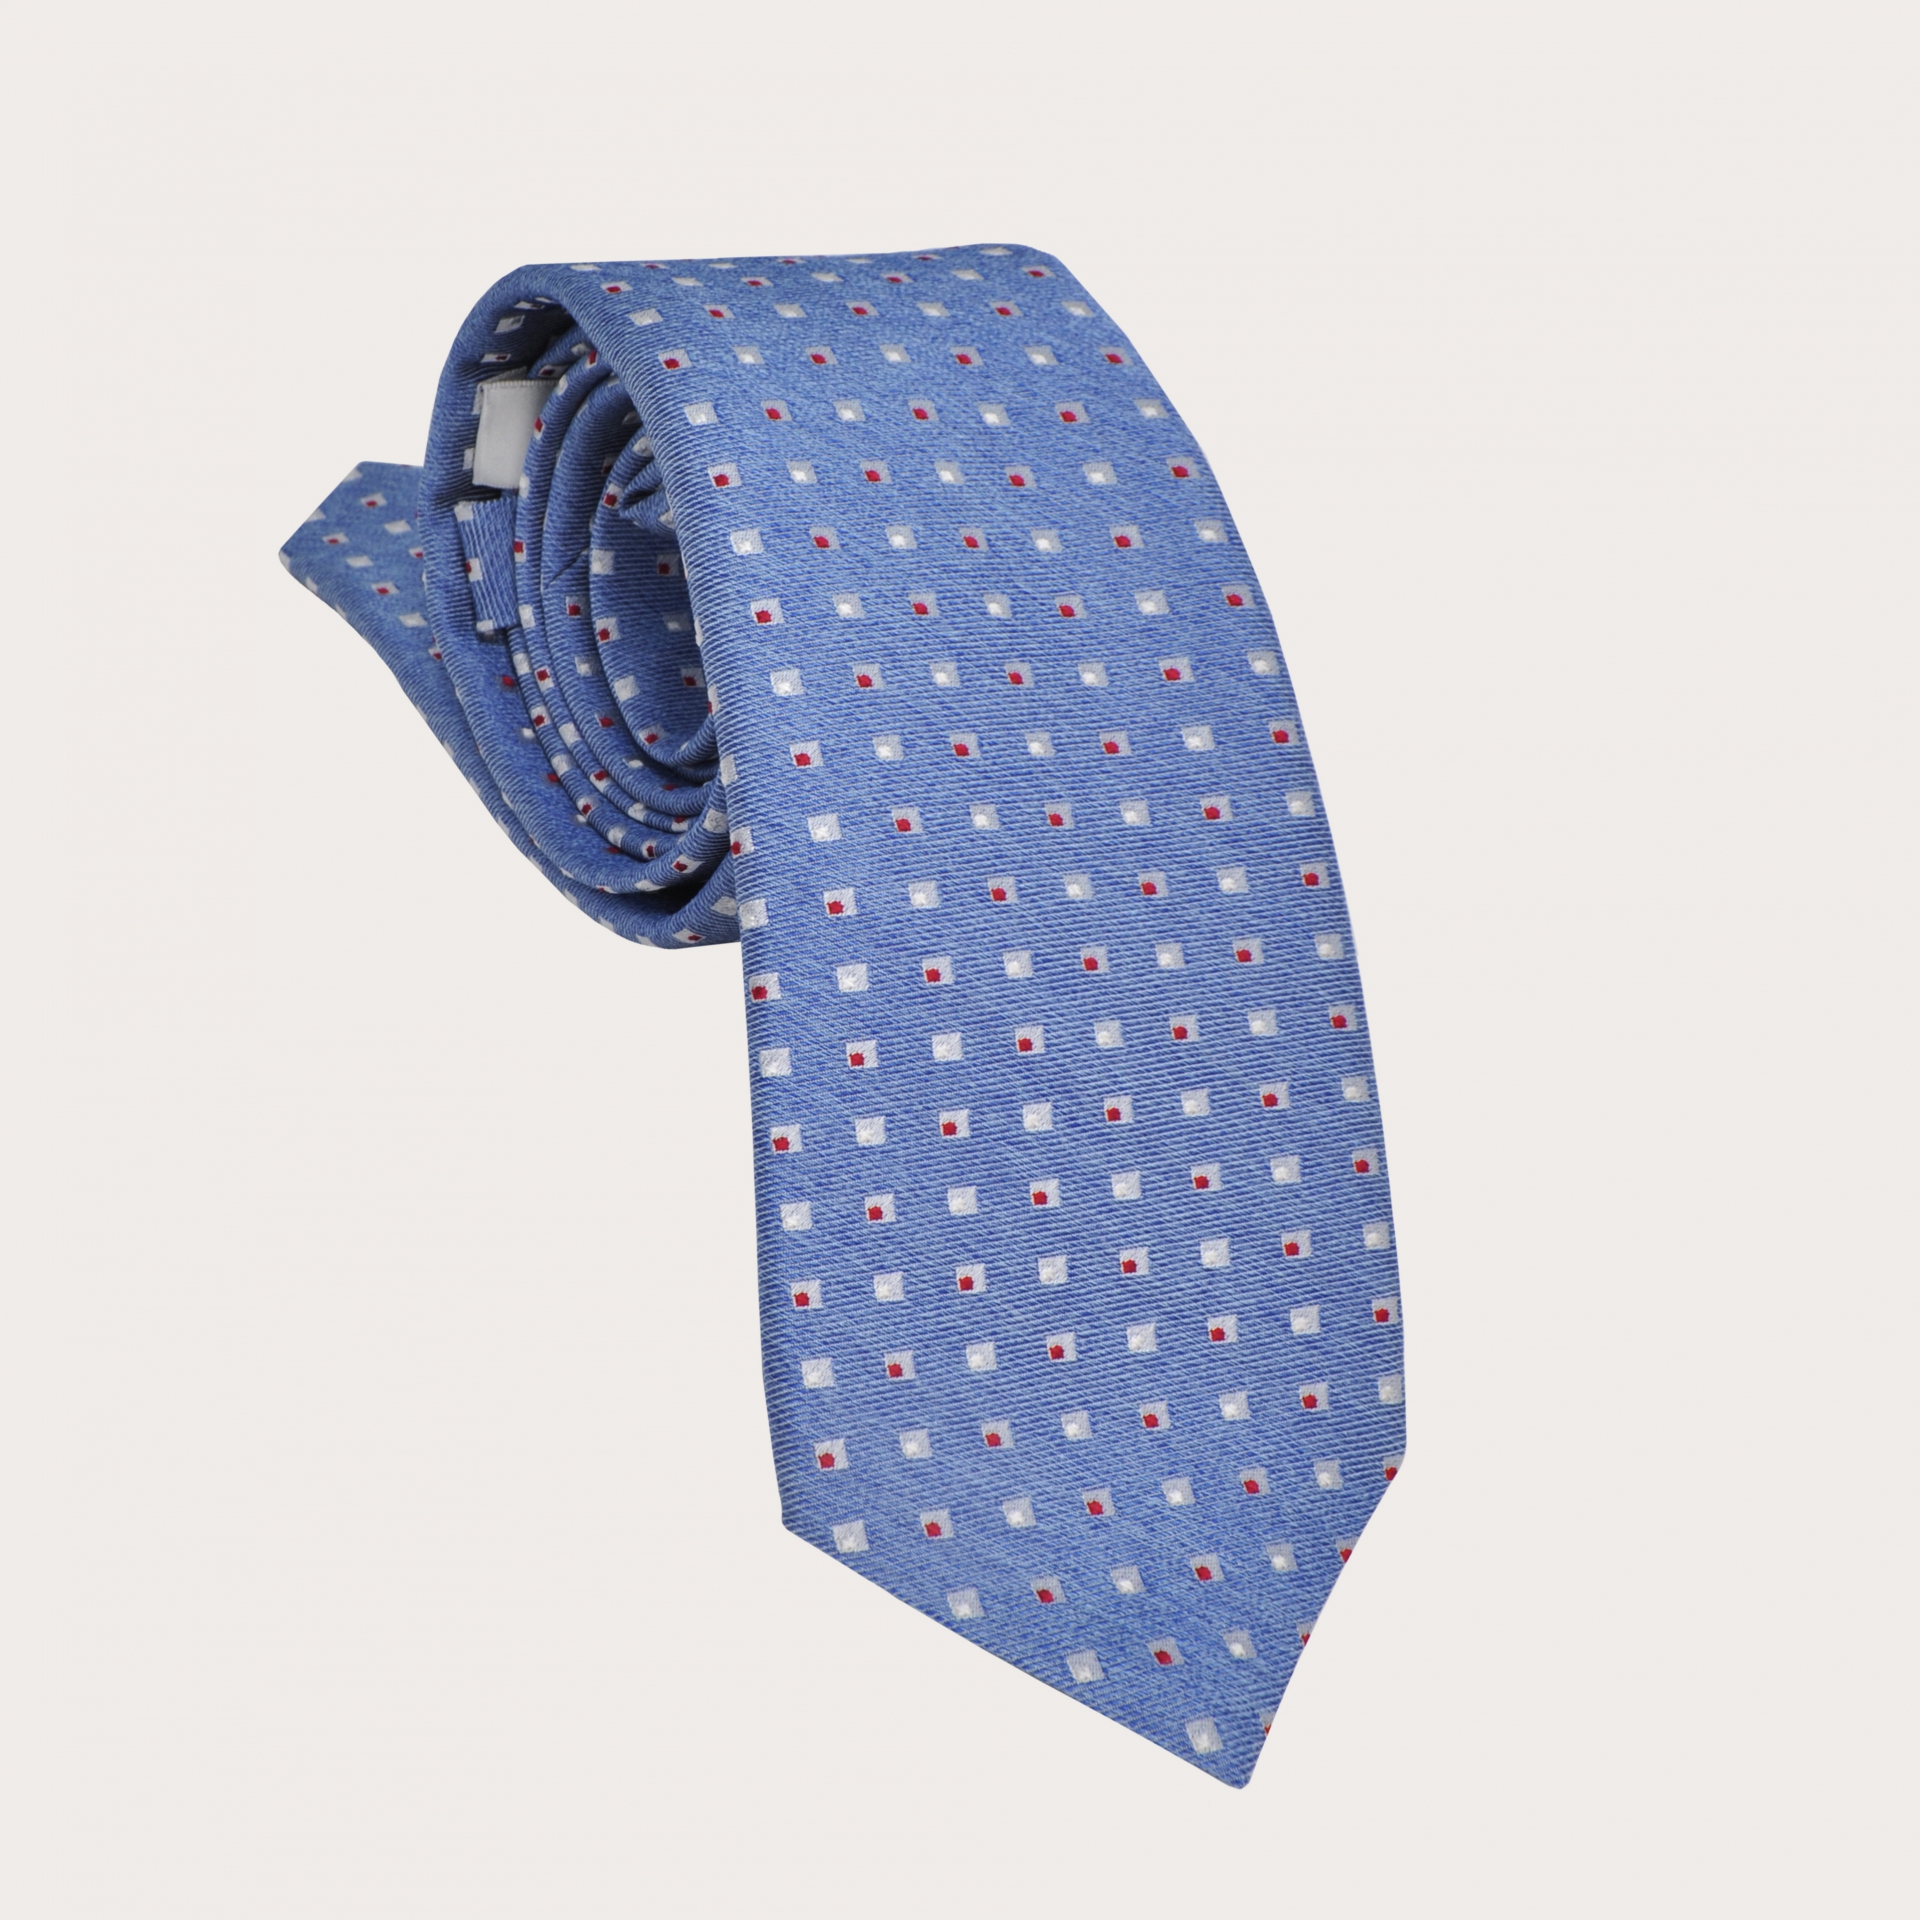 Brucle cravate bleu clair avec motif géométrique